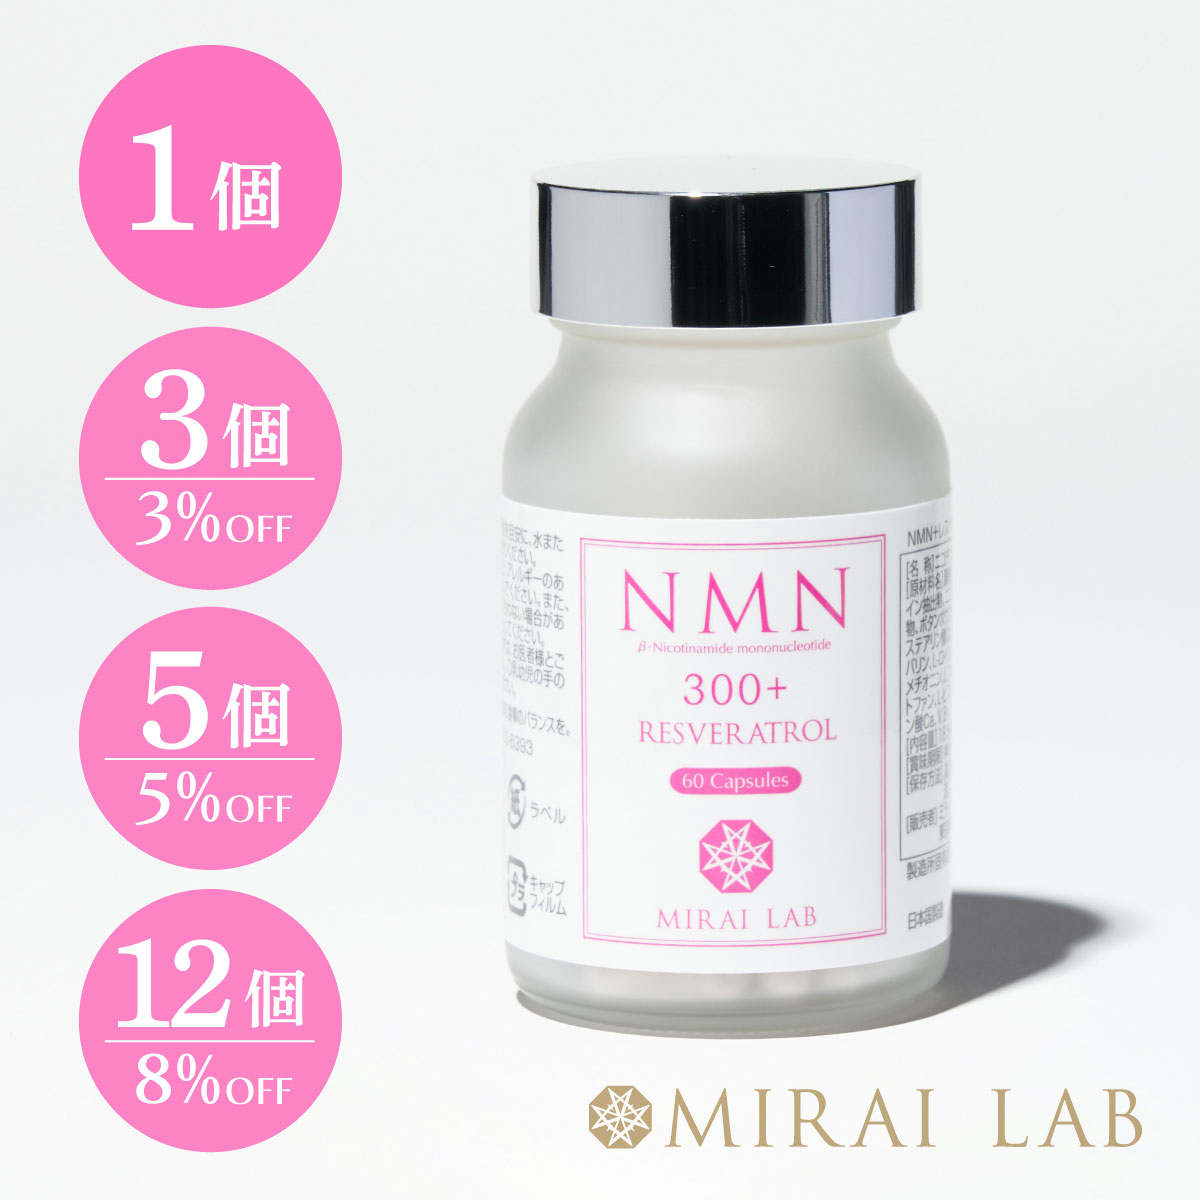 [1]商品説明 「NMN+レスベラトロールプラス」はミライラボのロングセラー商品。 NMN*1は一般の方では入手困難と言われる希少成分です。そのNMNを300mg配合し、他にも年齢に負けない物質として知られているポリフェノールを含んだ赤ワイン由来のレスベラトロールをはじめ、ヒアルロン酸、コラーゲンペプチド、長命草など、嬉しい成分も贅沢に配合しました。 いつまでも美しく、行動的で健康に暮らしたい方にお試しいただきたい、美容と健康をサポートするサプリメントです。＜br＞＞ *1：β-ニコチンアミドモノヌクレオチド [2]主な配合成分 澱粉、コラーゲンペプチド、赤ワイン抽出物、ニコチンアミドモノヌクレオチド、澱粉分解物、 ボタンボウフウ粉末（長命草）/HPMC、ビタミンC、ステアリン酸Ca、微粒二酸化ケイ素、 ヒアルロン酸、L-バリン、L-ロイシン、L-イソロイシン、L-リジン塩酸塩、L-メチオニン、 L-フェニルアラニン、L-トレオニン、L-トリプトファン、L-ヒスチジン、抽出V.E、ナイアシン、 パントテン酸Ca、V.B1、V.B6、V.B2、V.A、葉酸、V.D、V.B12 [3]栄養成分表示【2粒(618mg)あたり】 エネルギー1.89kcal/たんぱく質0.03g/脂質0.01g/炭水化物0.42g/食塩相当量0.0003g ※1. β‐Nicotinamide mononucleotide(ニコチンアミドモノヌクレオチド) ※2. 含水エタノール抽出、ポリフェノール25%以上、トランスレスベラトロール5%以上 ※3. 1日(2粒目安)/60粒入り [4]使用上の注意 原材料をご参照の上、アレルギーのある方はお召し上がりにならないでください。 　 また、体調や体質によりまれに体に合わない場合があります。その場合は摂取を中止してください。 薬を服用中の方、通院中の方は、お医者様とご相談の上お召し上がりください。 1日1～2粒を目安に、水またはぬるま湯と一緒にお召し上がりください。 本品は多量摂取により疾病が治癒したり健康が増進するものではありません。1日の摂取目安量をお守りください。 乳幼児の手の届かないところに保管してください。 開封後は封をしっかり閉めて冷暗所に保管してください。開封後は早めにお召し上がりください。 名称 ニコチンアミドモノヌクレオチド(NMN)含有加工食品 内容量 18.54g(309mg×60粒) 原材料 澱粉、コラーゲンペプチド、赤ワイン抽出物、ニコチンアミドモノヌクレオチド、澱粉分解物、 ボタンボウフウ粉末（長命草）/HPMC、ビタミンC、ステアリン酸Ca、微粒二酸化ケイ素、 ヒアルロン酸、L-バリン、L-ロイシン、L-イソロイシン、L-リジン塩酸塩、L-メチオニン、 L-フェニルアラニン、L-トレオニン、L-トリプトファン、L-ヒスチジン、抽出V.E、ナイアシン、 パントテン酸Ca、V.B1、V.B6、V.B2、V.A、葉酸、V.D、V.B12 保存方法 開栓前：高温、多湿及び直射日光を避け、涼しい所で保管ください。開栓後：蓋をしっかり閉め、冷蔵庫に保管して下さい。 賞味期限 パッケージに記載 製造者 ミライラボバイオサイエンス株式会社 広告文責 ミライラボバイオサイエンス株式会社(tel.03-5403-6393) メーカー名 ミライラボバイオサイエンス株式会社 区分 健康食品 製造国 日本今、人気・話題のNMNにレスベラトロールとプラセンタを配合した、エイジングケアニュートラシューティカル。 ※ビタミンB3(ナイアシン)の一種。正式名称はβニコチンアミドモノヌクレオチド。 NMN300mgの他、ポリフェノールを25%以上も含んだ赤ワイン由来のレスベラトロールやヒアルロン酸、コラーゲンペプチドなどを贅沢に配合したニュートラシューティカル。特許第6545256号。 こんな方にオススメです ●いつまでも若々しさを保ちたい方　●ハリのある美しさを保ちたい方　●若々しいスタイルを保ちたい方●美容意識の高い方　●喫煙する方　●活き活きと毎日を過ごしたい方●健康的に過ごしたい方　●体調が気になる方 TV・雑誌など、各メディアで話題の大人気健康補助食品 ミライラボのニュートラシューティカルは、TV・雑誌・新聞などの様々なメディアにも取り上げられ、至るところで話題沸騰、注目を浴びています。 01｜NMNが配合された世界初の健康補助食品 NMNは一般の方では入手不可能と言われる希少成分で、そのNMNを贅沢に300mgも配合し、他にもポリフェノールを25%以上も含んだ赤ワイン由来のレスベラトロールやヒアルロン酸、コラーゲンペプチド、ビタミンC、コーンセラミド、エラスチン、長命草、アミノ酸ミックス9種にビタミンミックス11種など、女性に嬉しい美容成分が贅沢に配合された夢のような健康補助食品です。いつまでも美しく若々しく、行動的で健康に暮らしたい、健康や美容の気になる方に試していただきたい、エイジングケアのためのニュートラシューティカルです。 02｜ポリフェノールの一種レスベラトロール配合 NMN+レスベラトロールに配合されている成分レスベラトロールはブドウなどに含まれるポリフェノールの一種で、化粧品や健康補助食品に配合される美容成分として高い注目を集めています。 03｜amazon新商品売上第1位 2015年4月1日発売開始からわずか22日間でamazonサプリメント新商品ランキング第1位を獲得しました。また、amazonレスベラトロール配合食品売れ筋ランキング第1位を獲得（2015年10月現在）。多くの方にミライラボのニュートラシューティカルをご愛飲いただいております。 04｜第三者機関で検査済だから安心・安全 健康補助食品の安全性に関しましても安全性試験を第三者機関にて行い陰性（問題が無い）、併せて検査しました毒性試験、刺激性試験、突然変異試験の総てにおいても、第三者機関より陰性（問題が無い）の試験結果書を得ております。